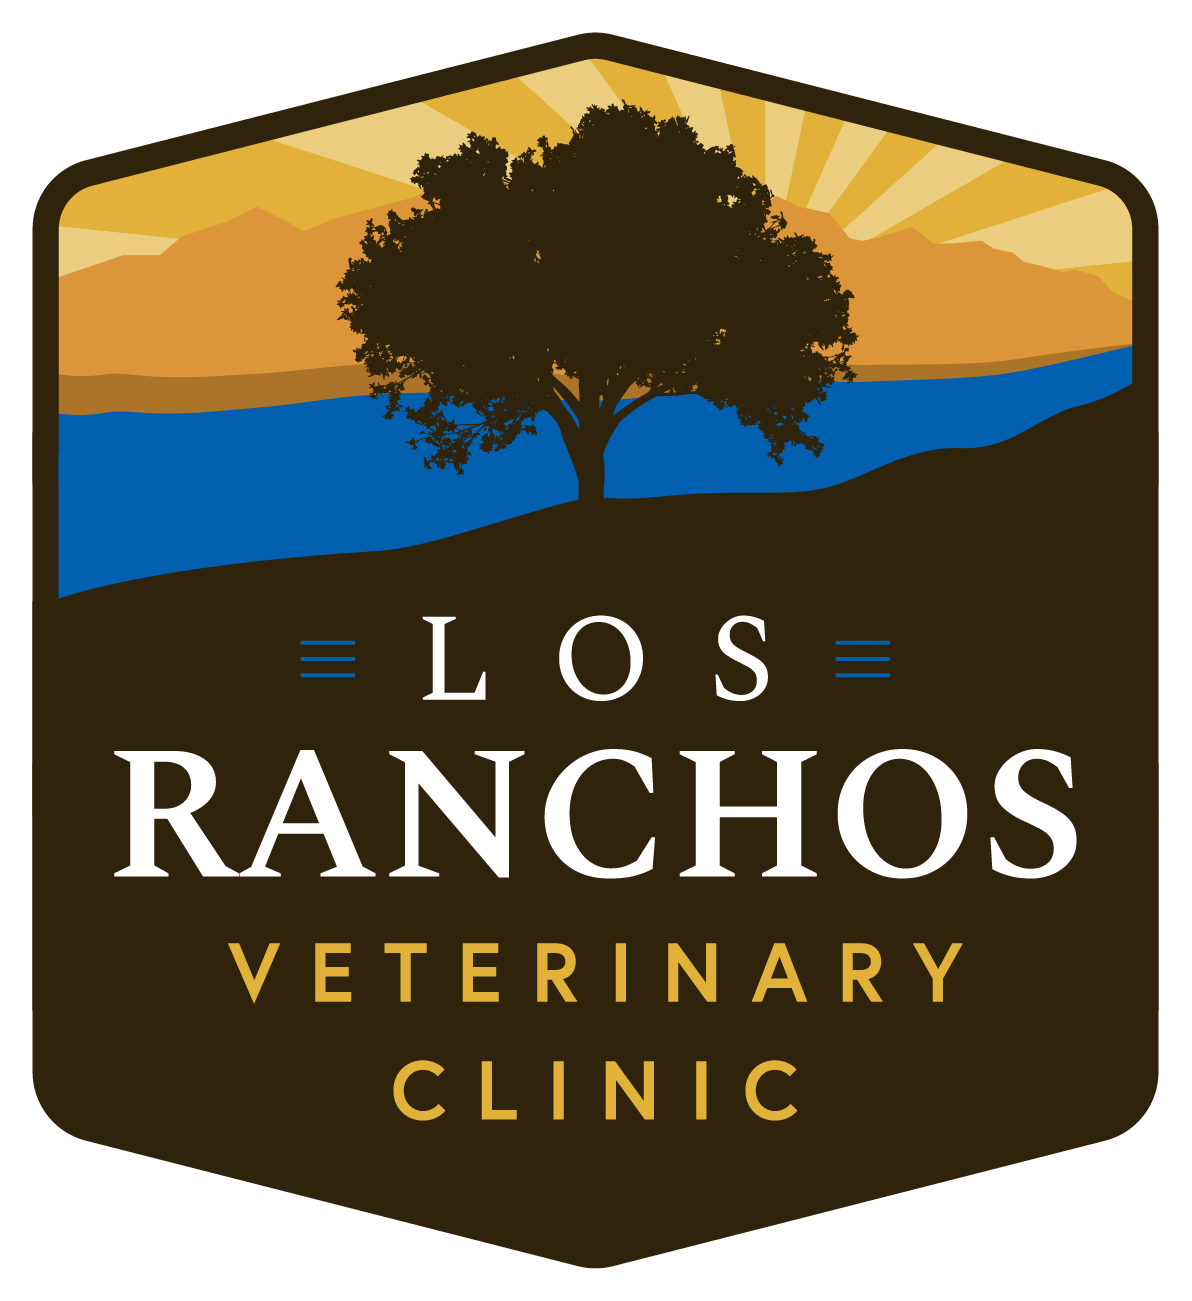 Los Ranchos Veterinary Clinic